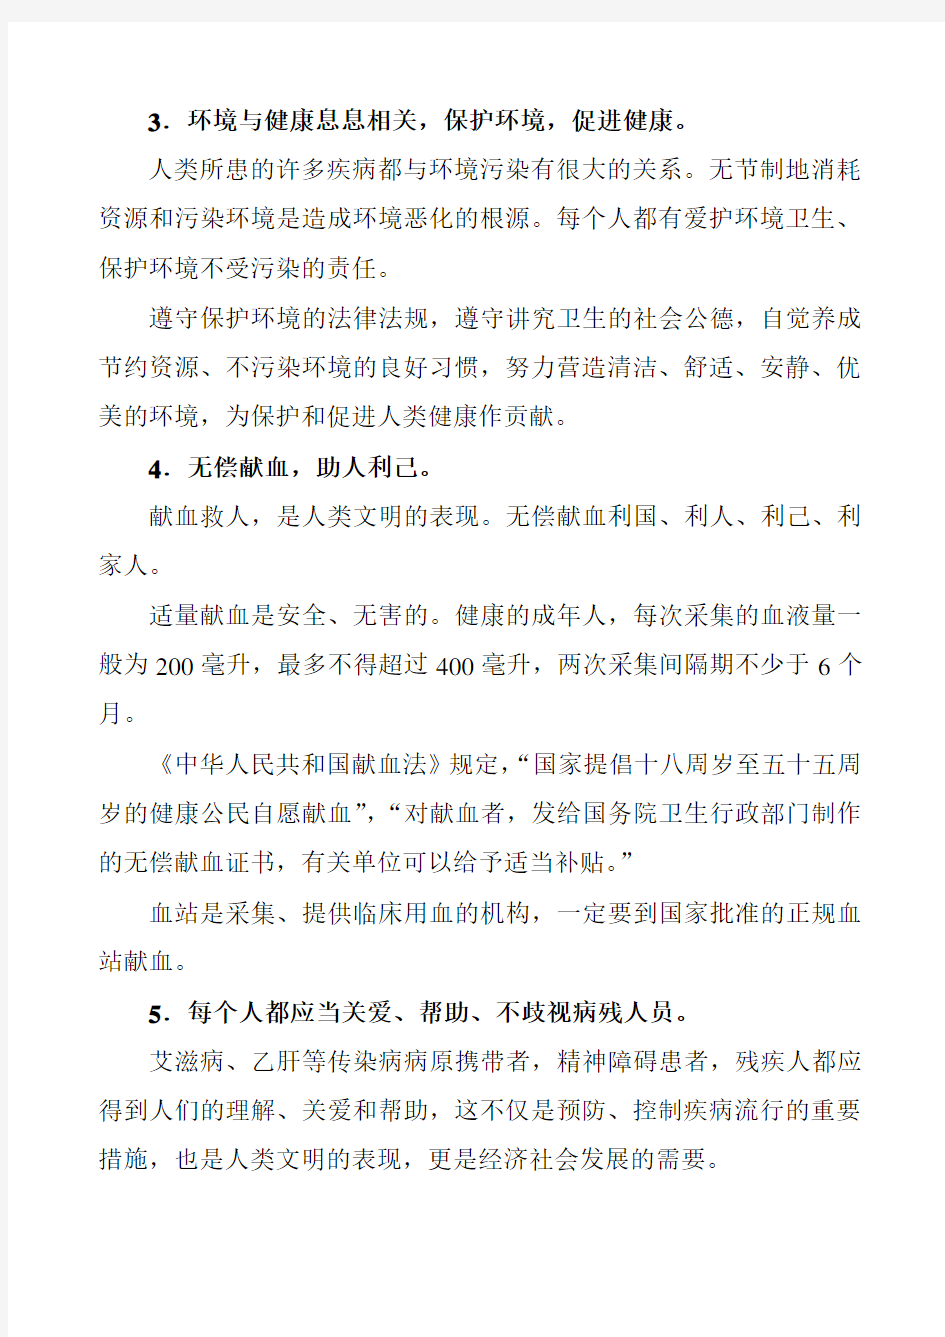 中国公民健康素养——基本知识与技能释义(2015年)